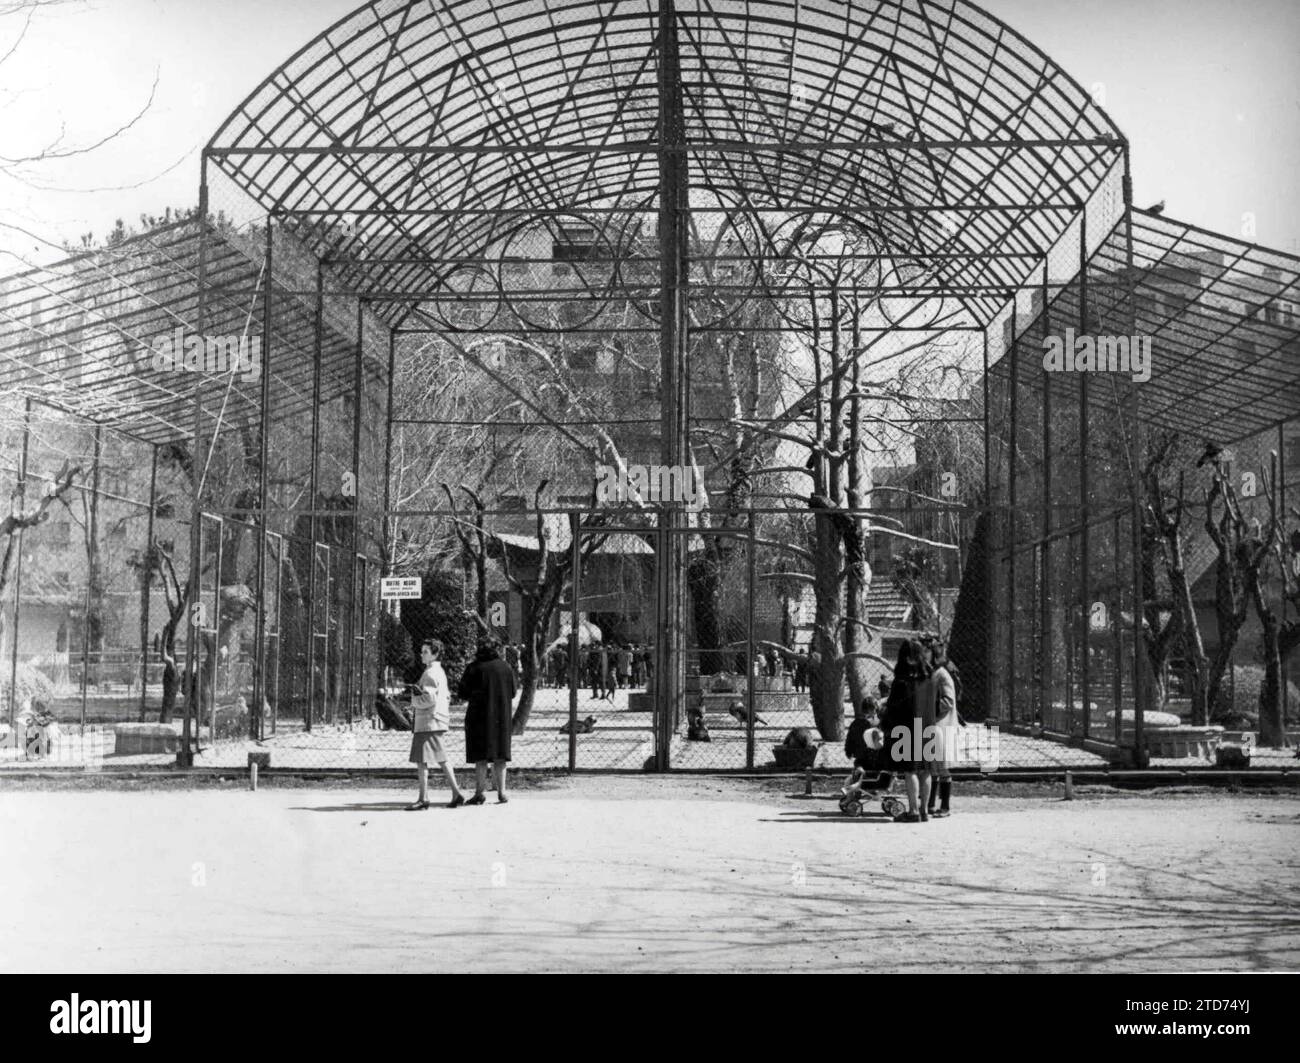 Madrid, aprile 1966. Nella foto, la Menagerie del Parco del Retiro. Crediti: Album / Archivo ABC / Teodoro Naranjo Domínguez Foto Stock